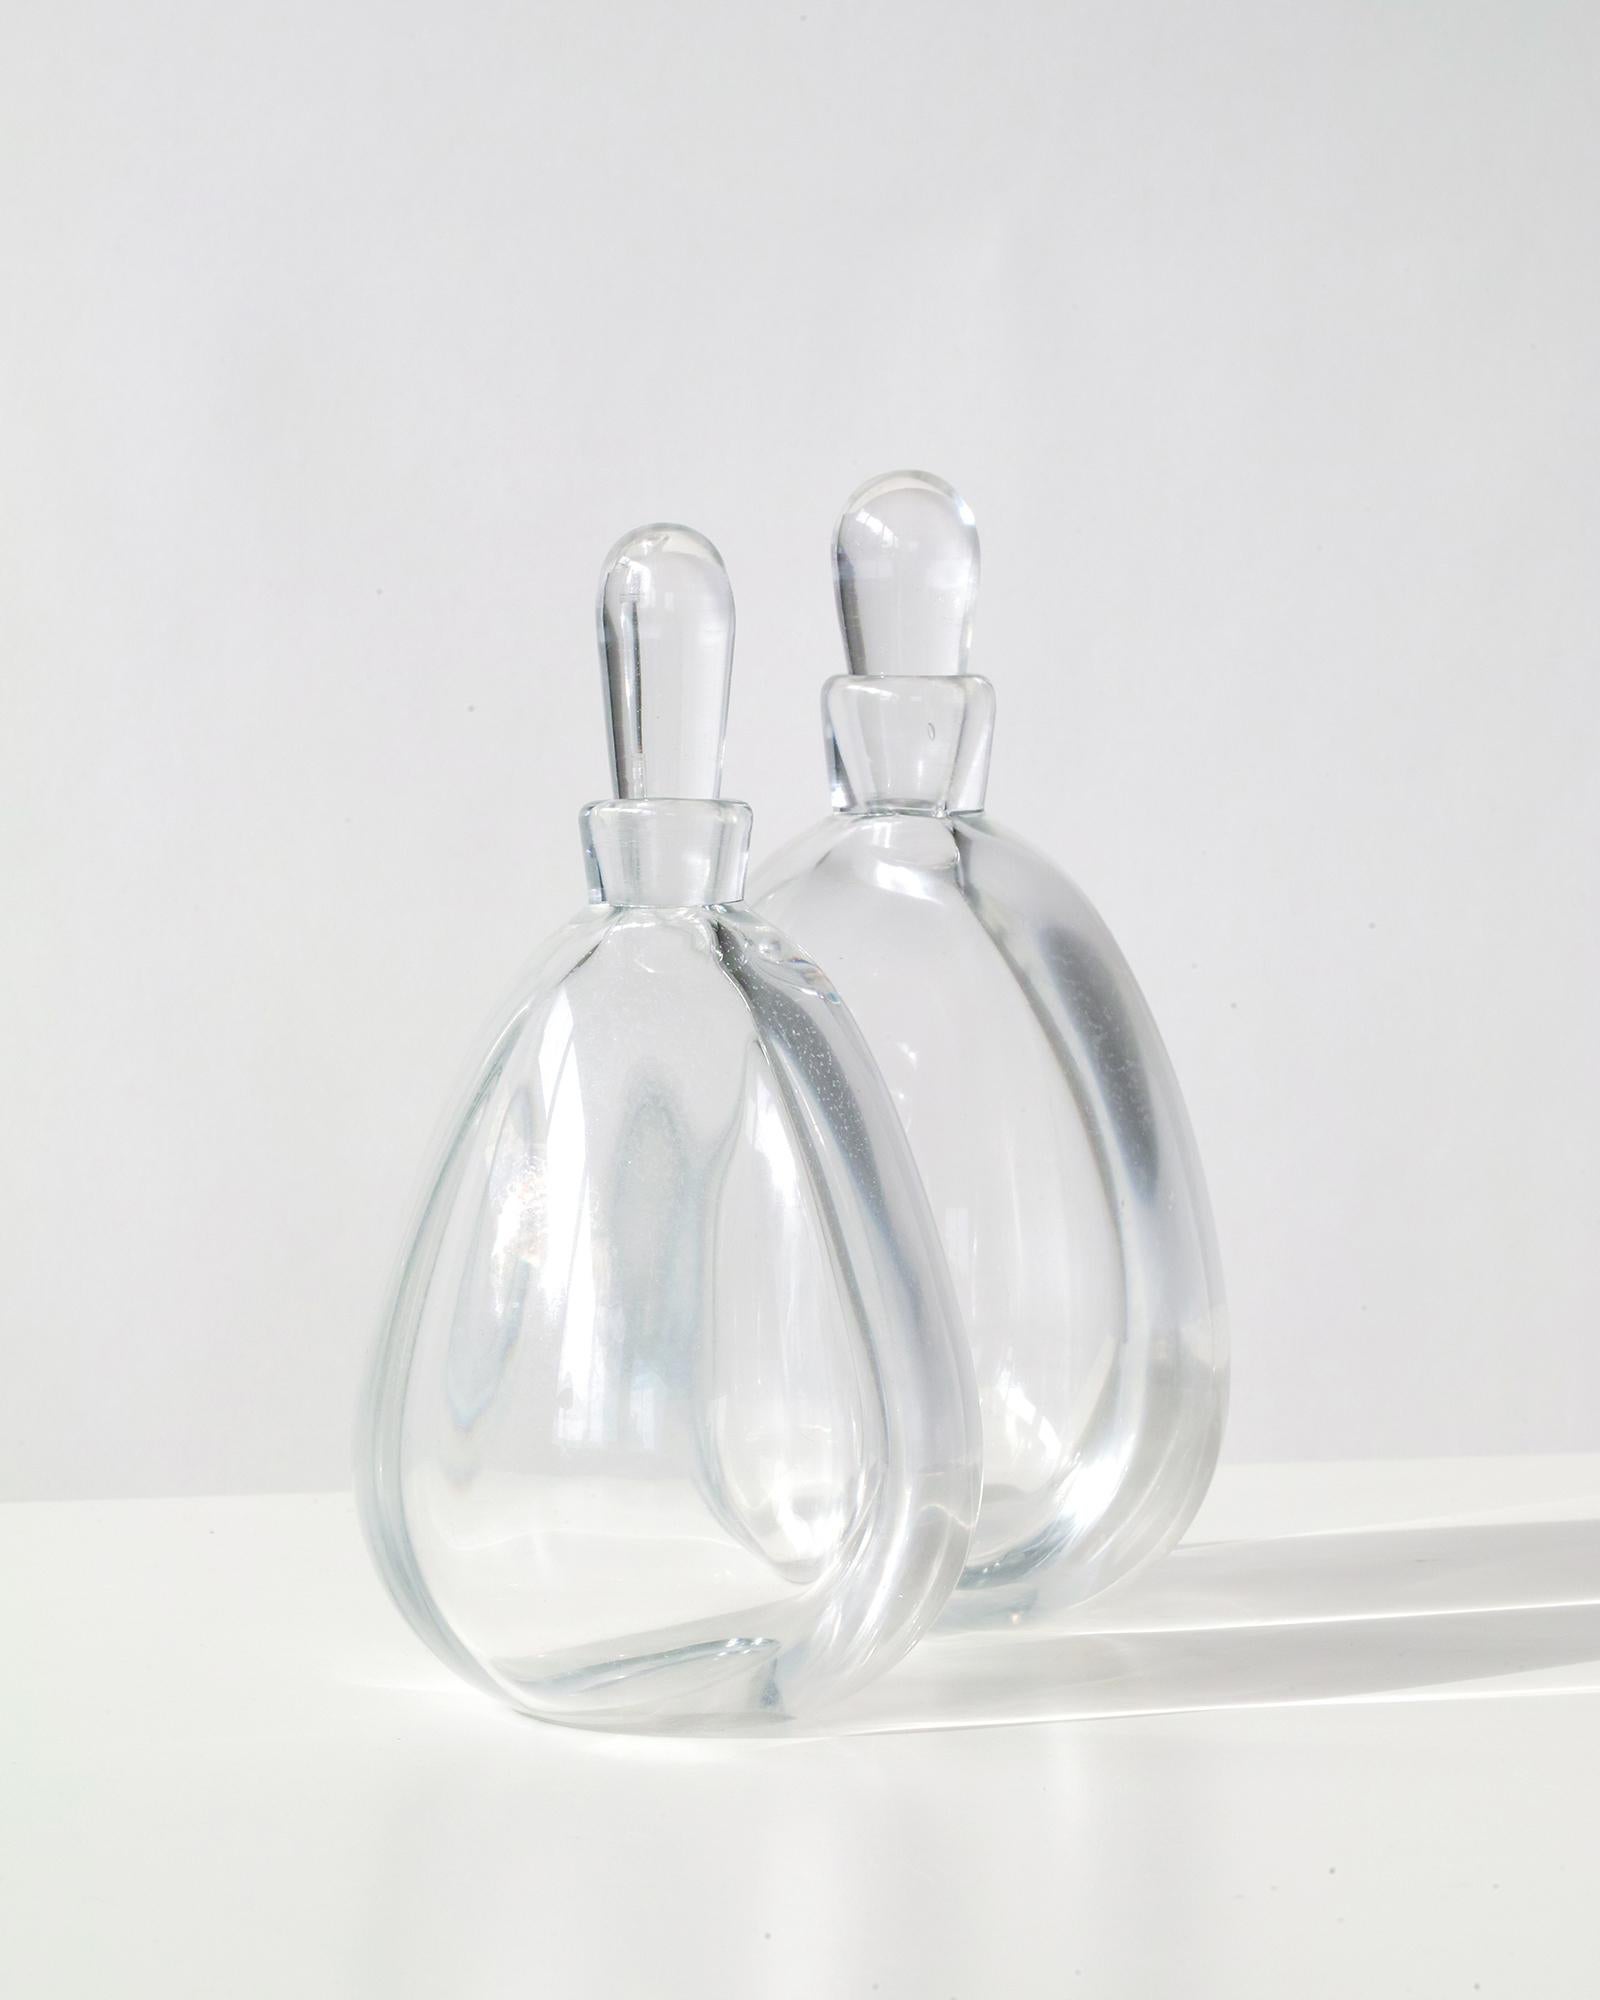 Wir bieten Ihnen dieses außergewöhnliche und seltene Paar früher dekorativer Kunstglasflaschen von Vicke Lindstand für Orrefors, Schweden. Jede handgefertigte/mundgeblasene Flasche ist einzigartig und so gestaltet, dass sie sich gegenseitig ergänzt.